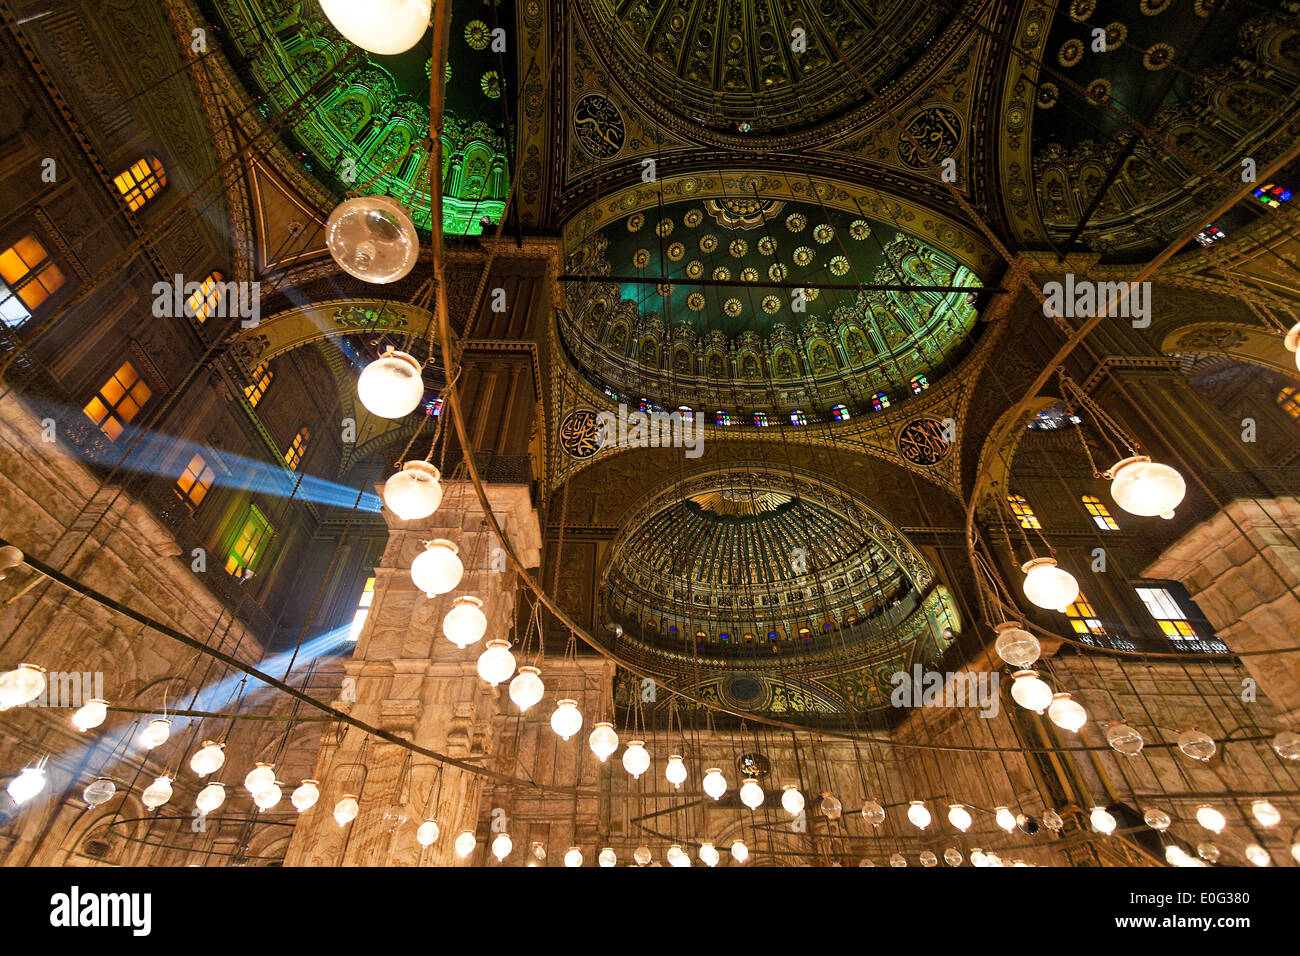 Egipto, El Cairo. Mohammed Ali Moschee. Fotografía de interiores, aegypten, Kairo. Mohammed Ali Moschee. Innenaufnahme. Foto de stock